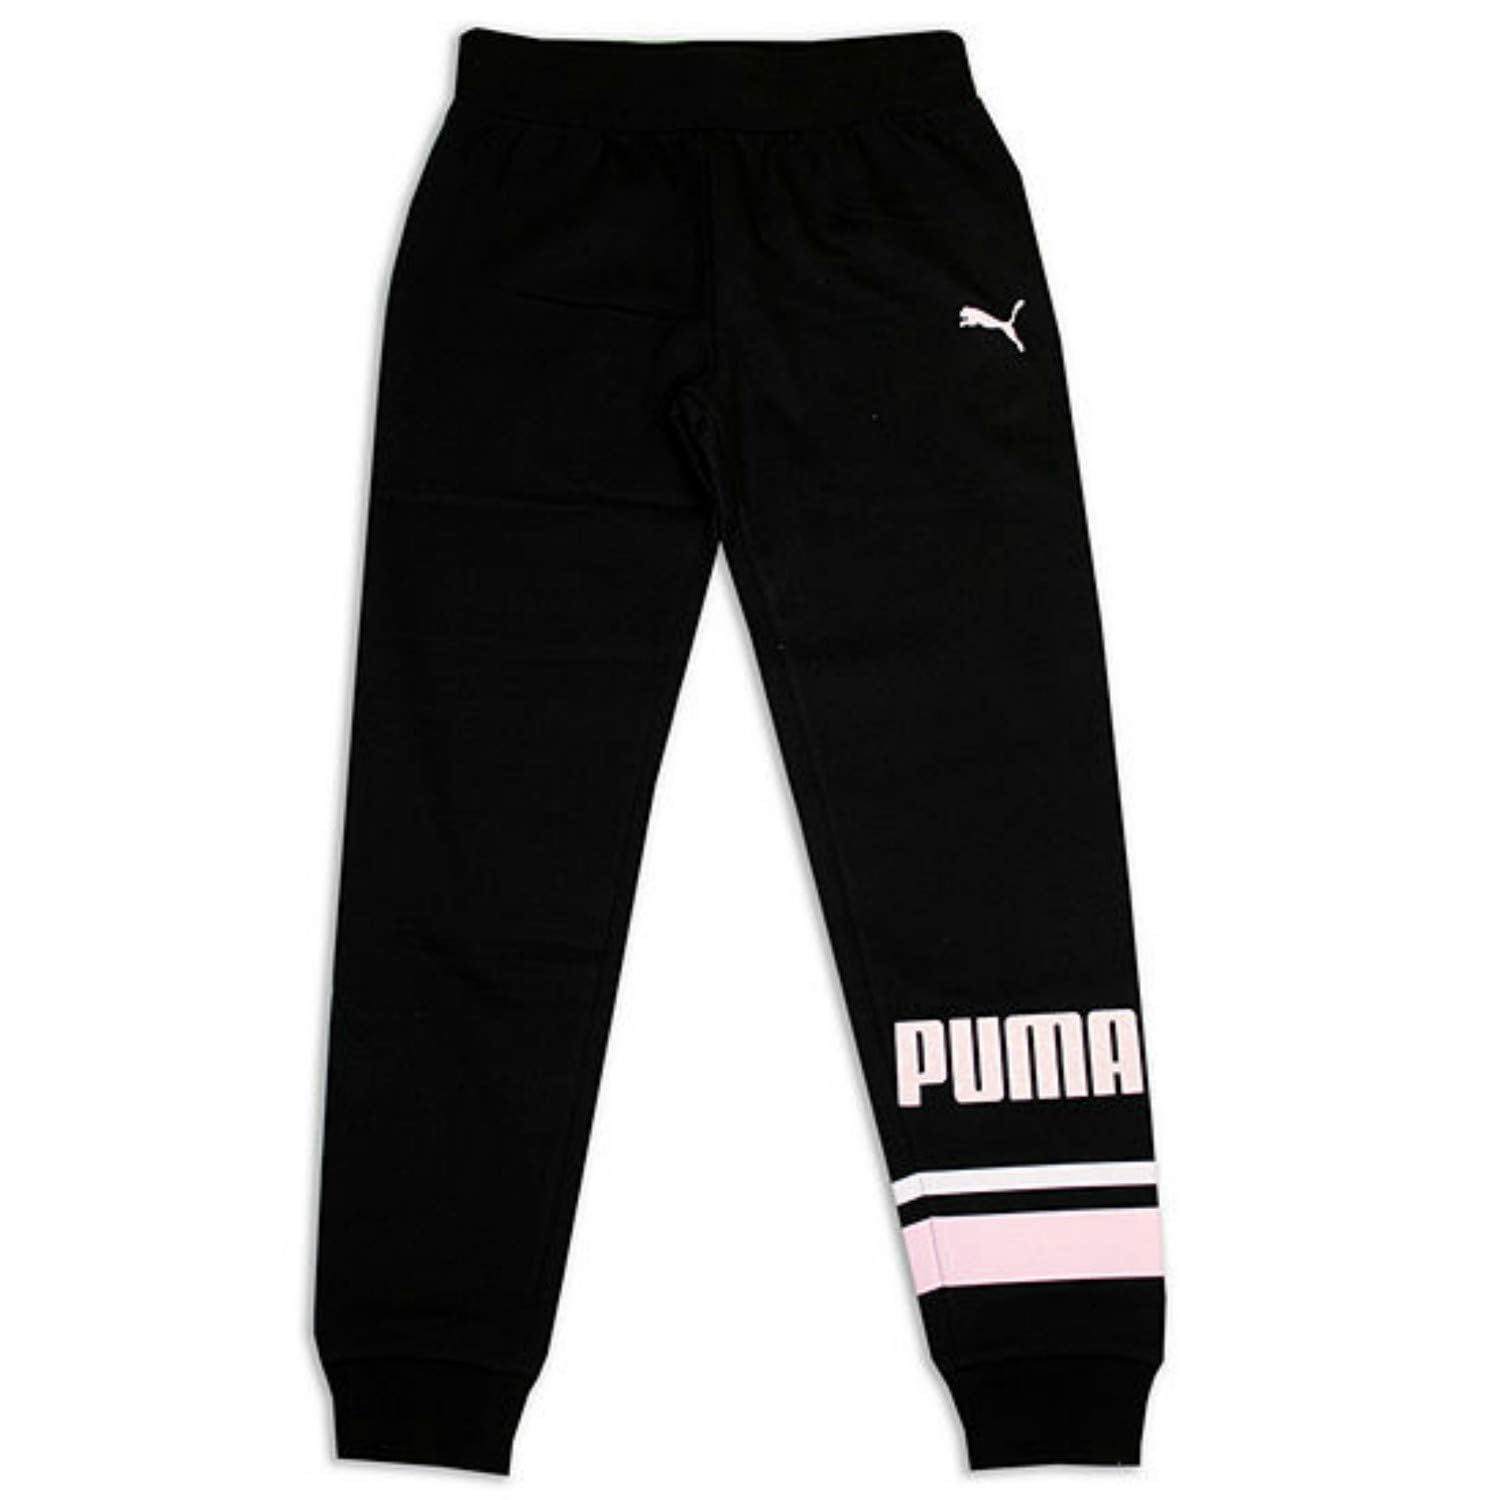 puma pants for girls